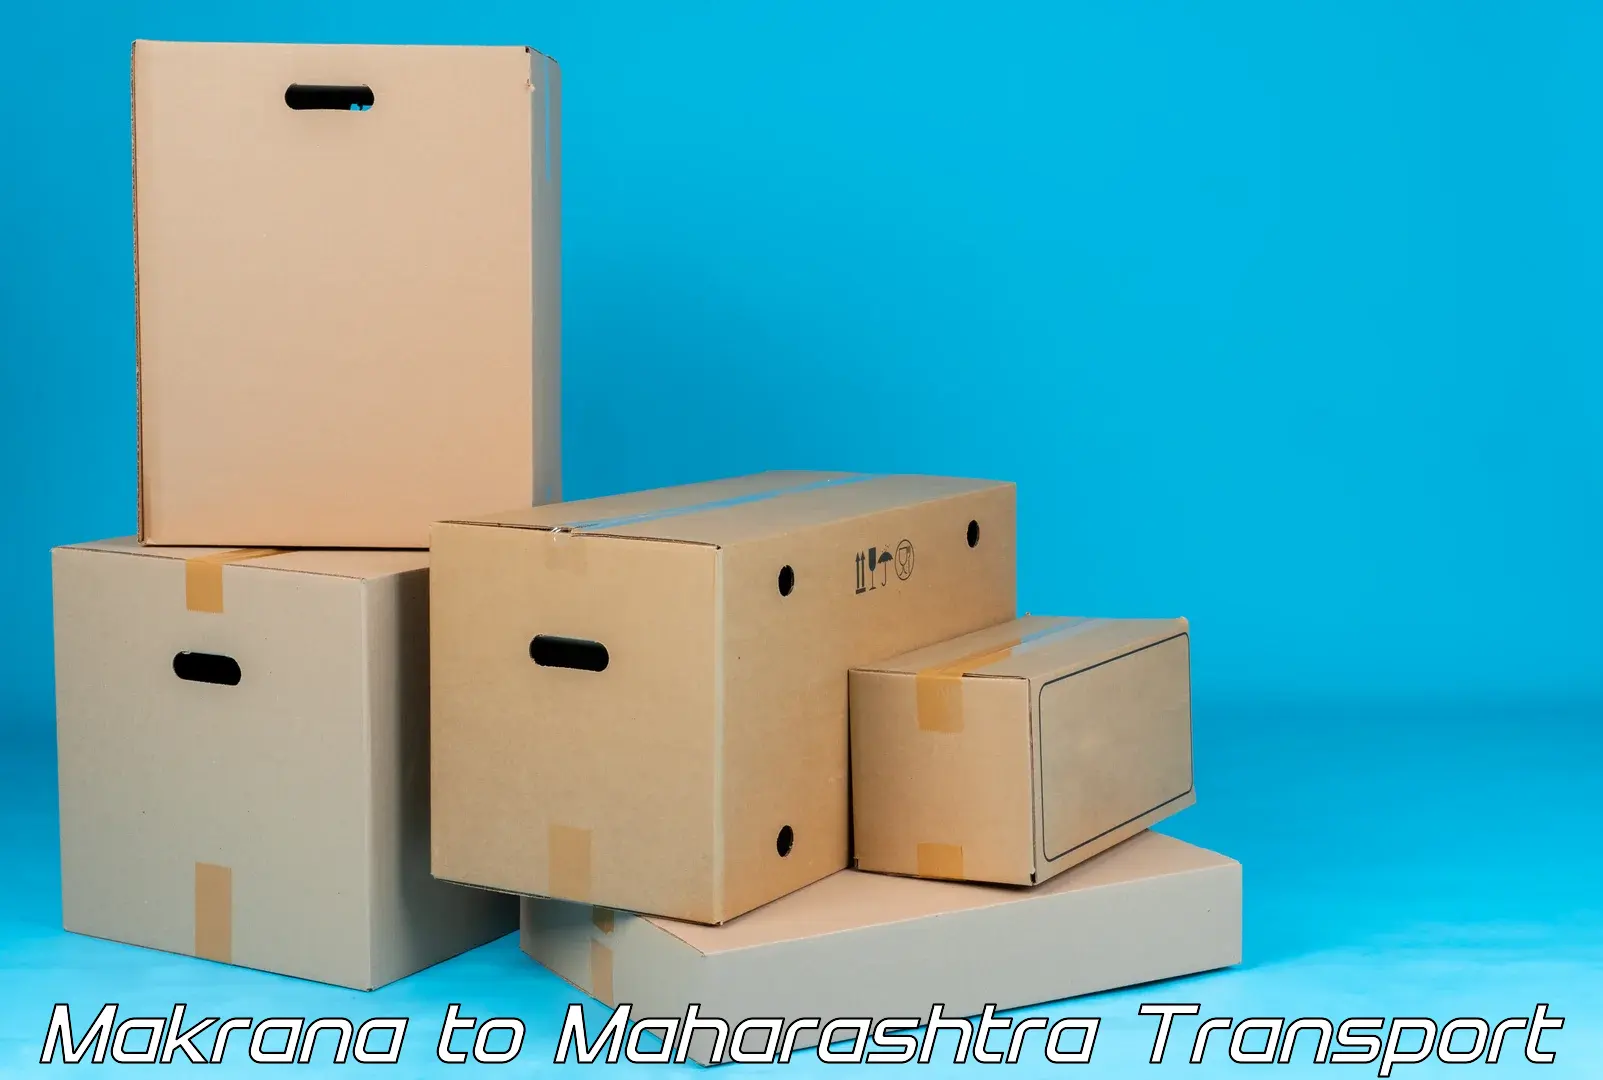 Cargo transport services Makrana to Atpadi